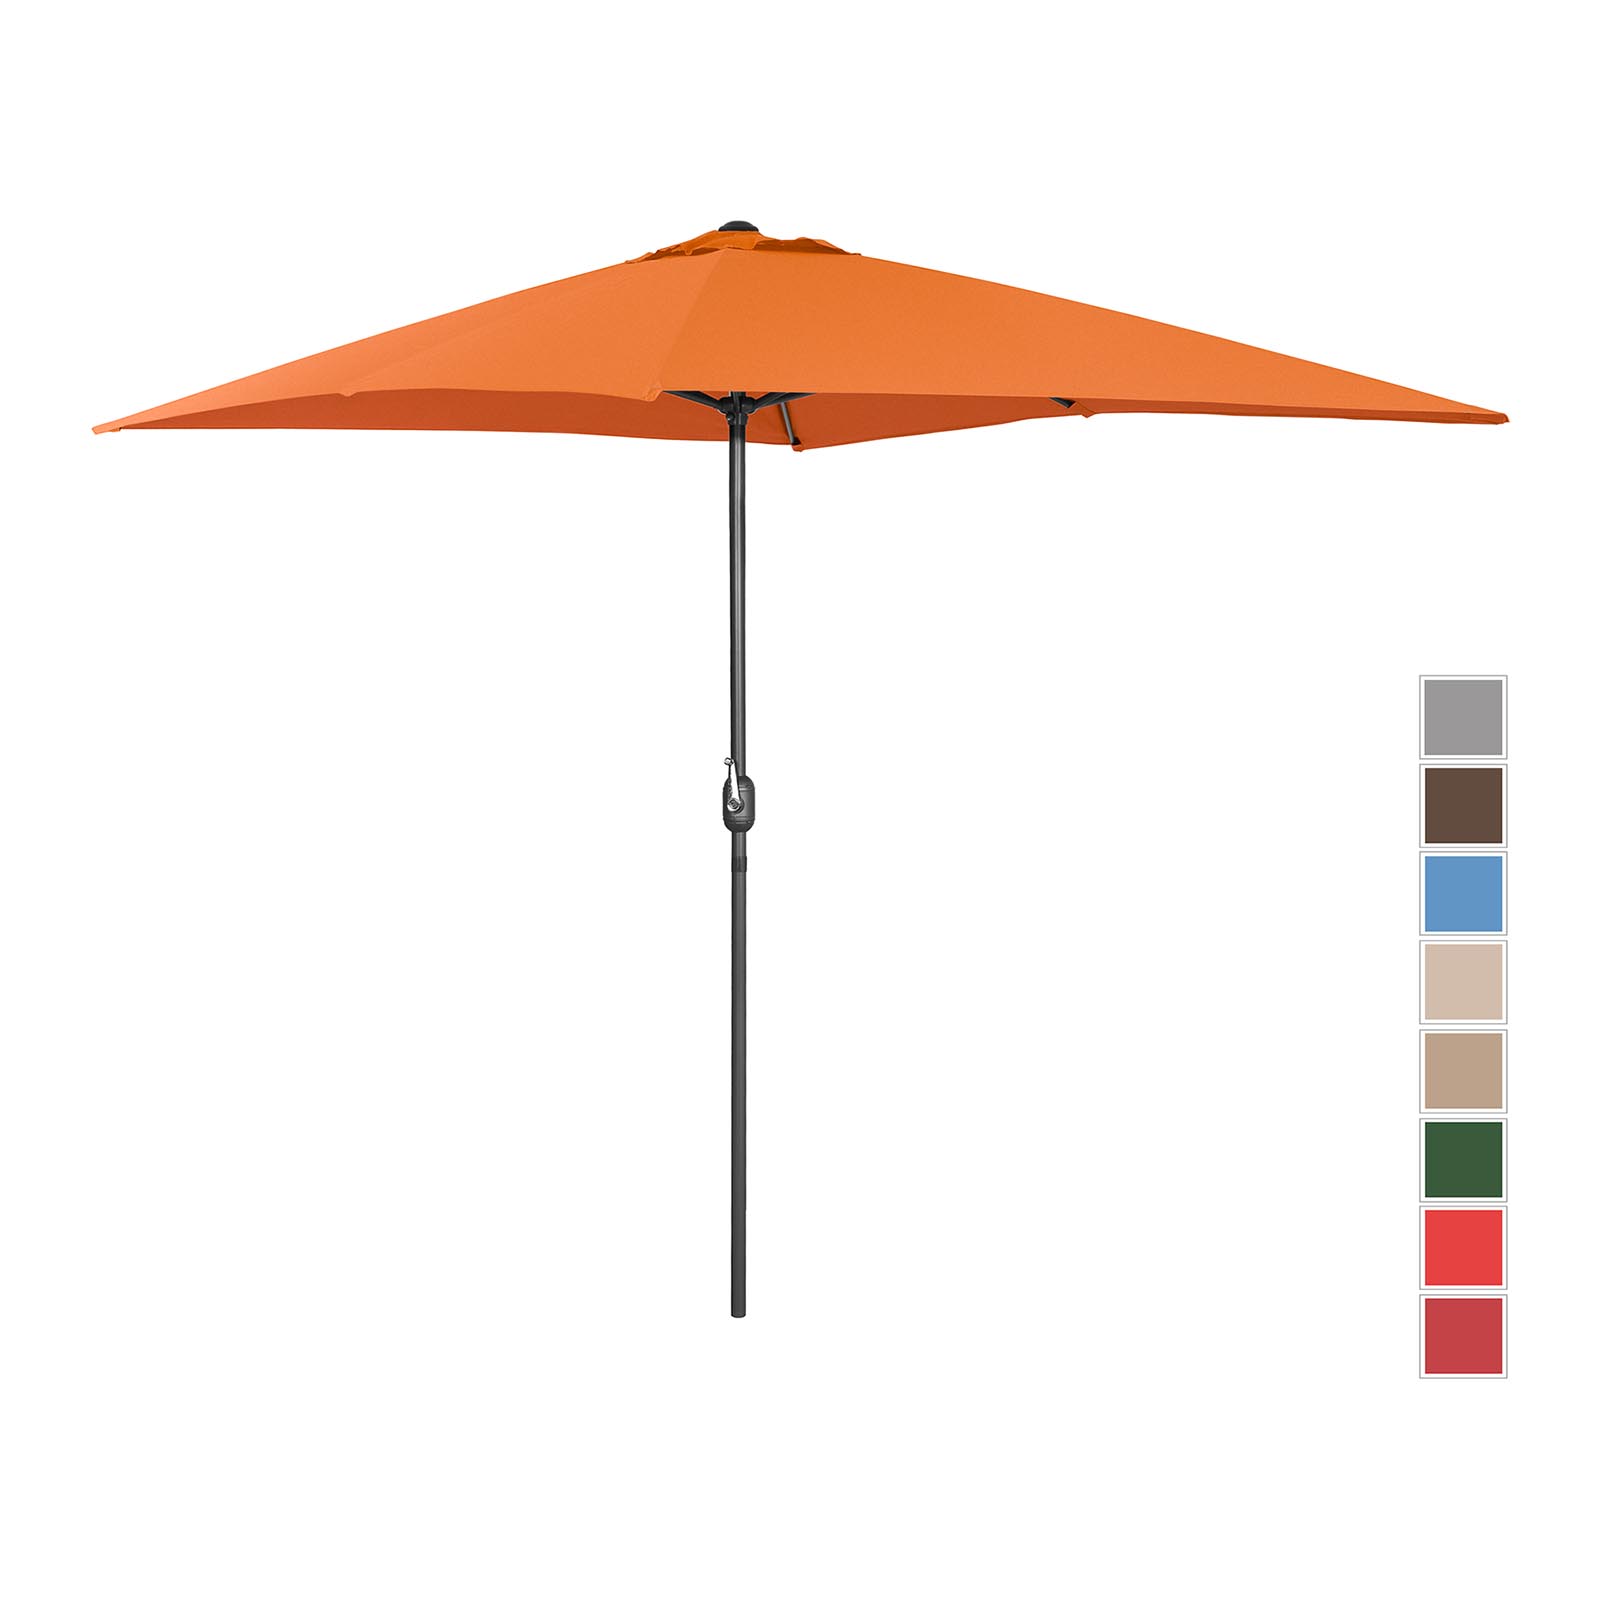 Голям външен чадър - оранжев - правоъгълен - 200 x 300 cm